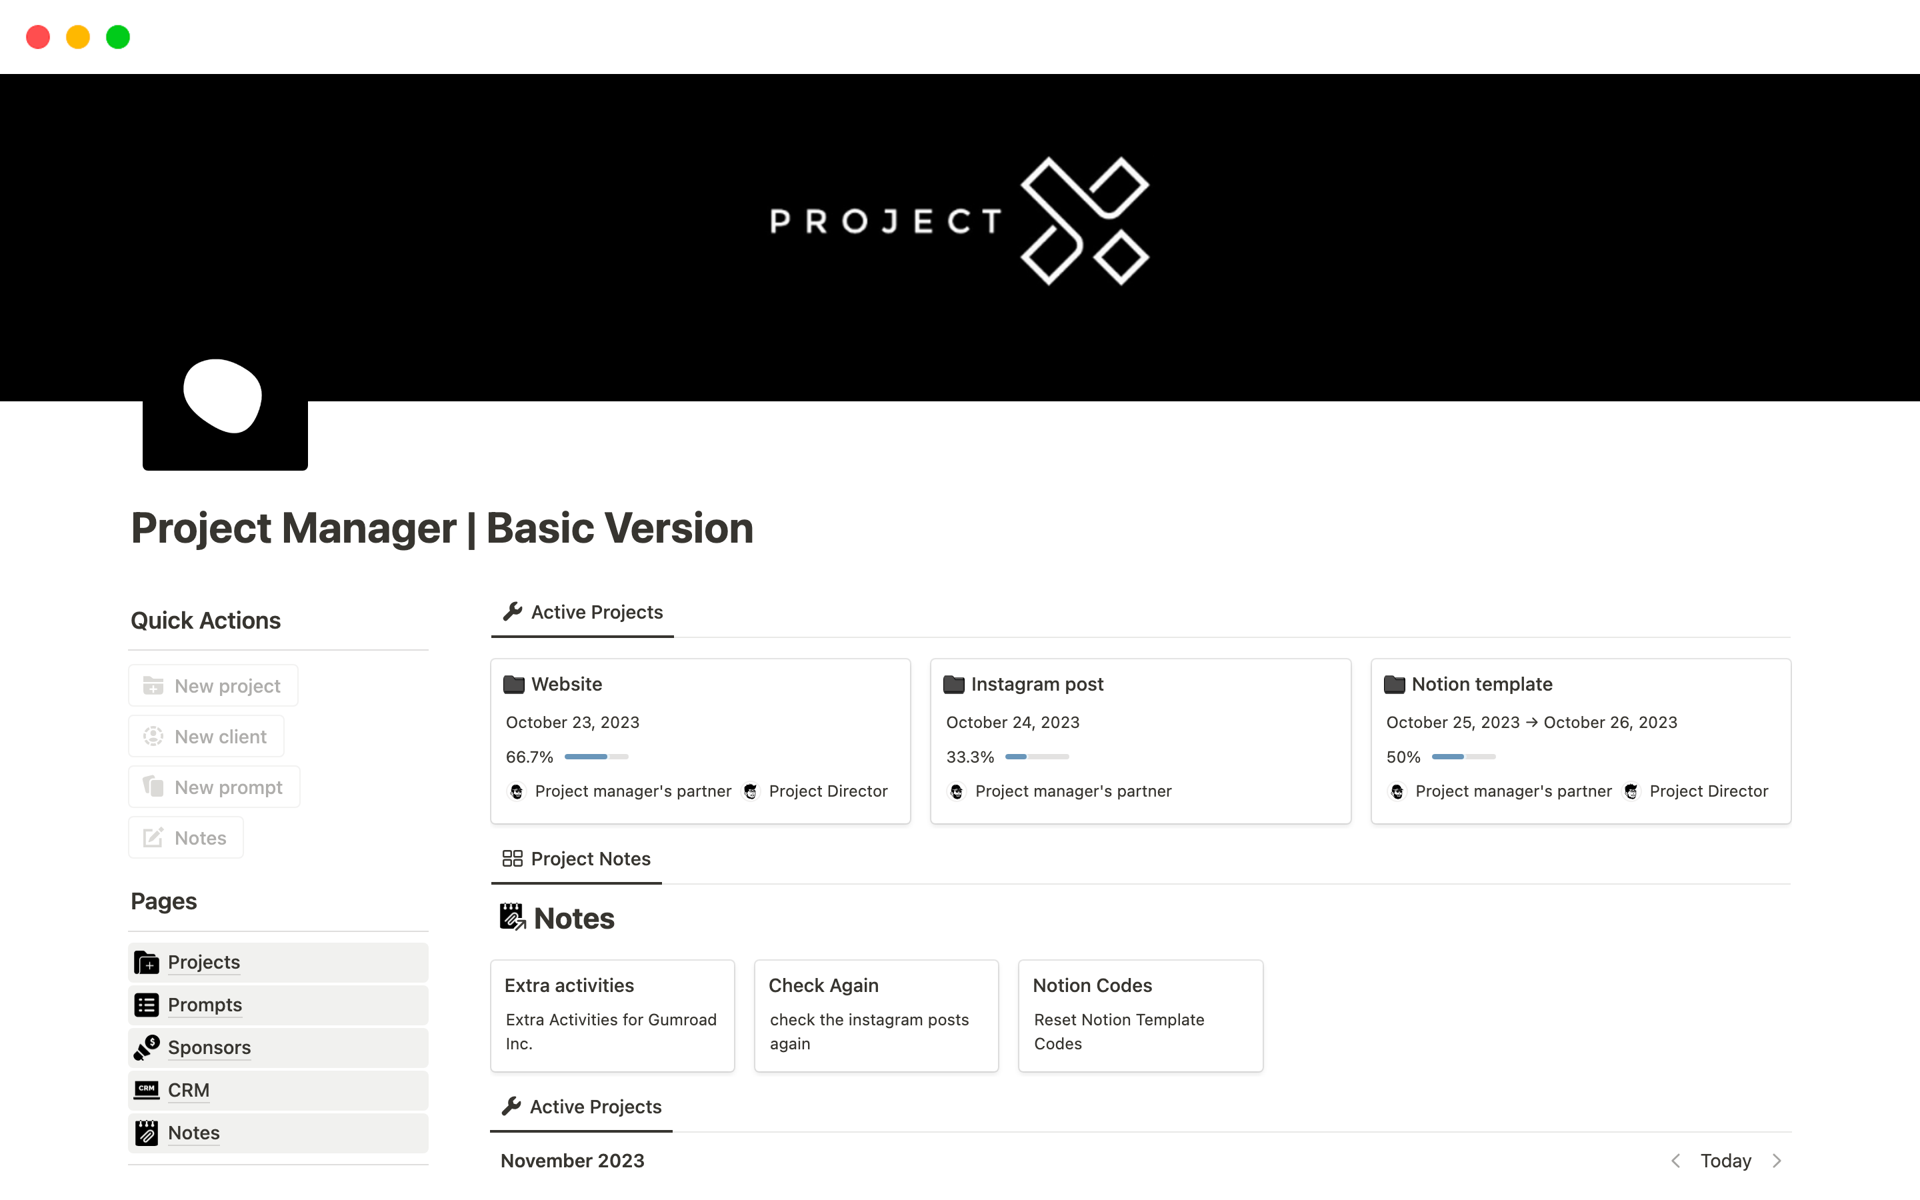 Project Manager | Basic Version님의 템플릿 미리보기